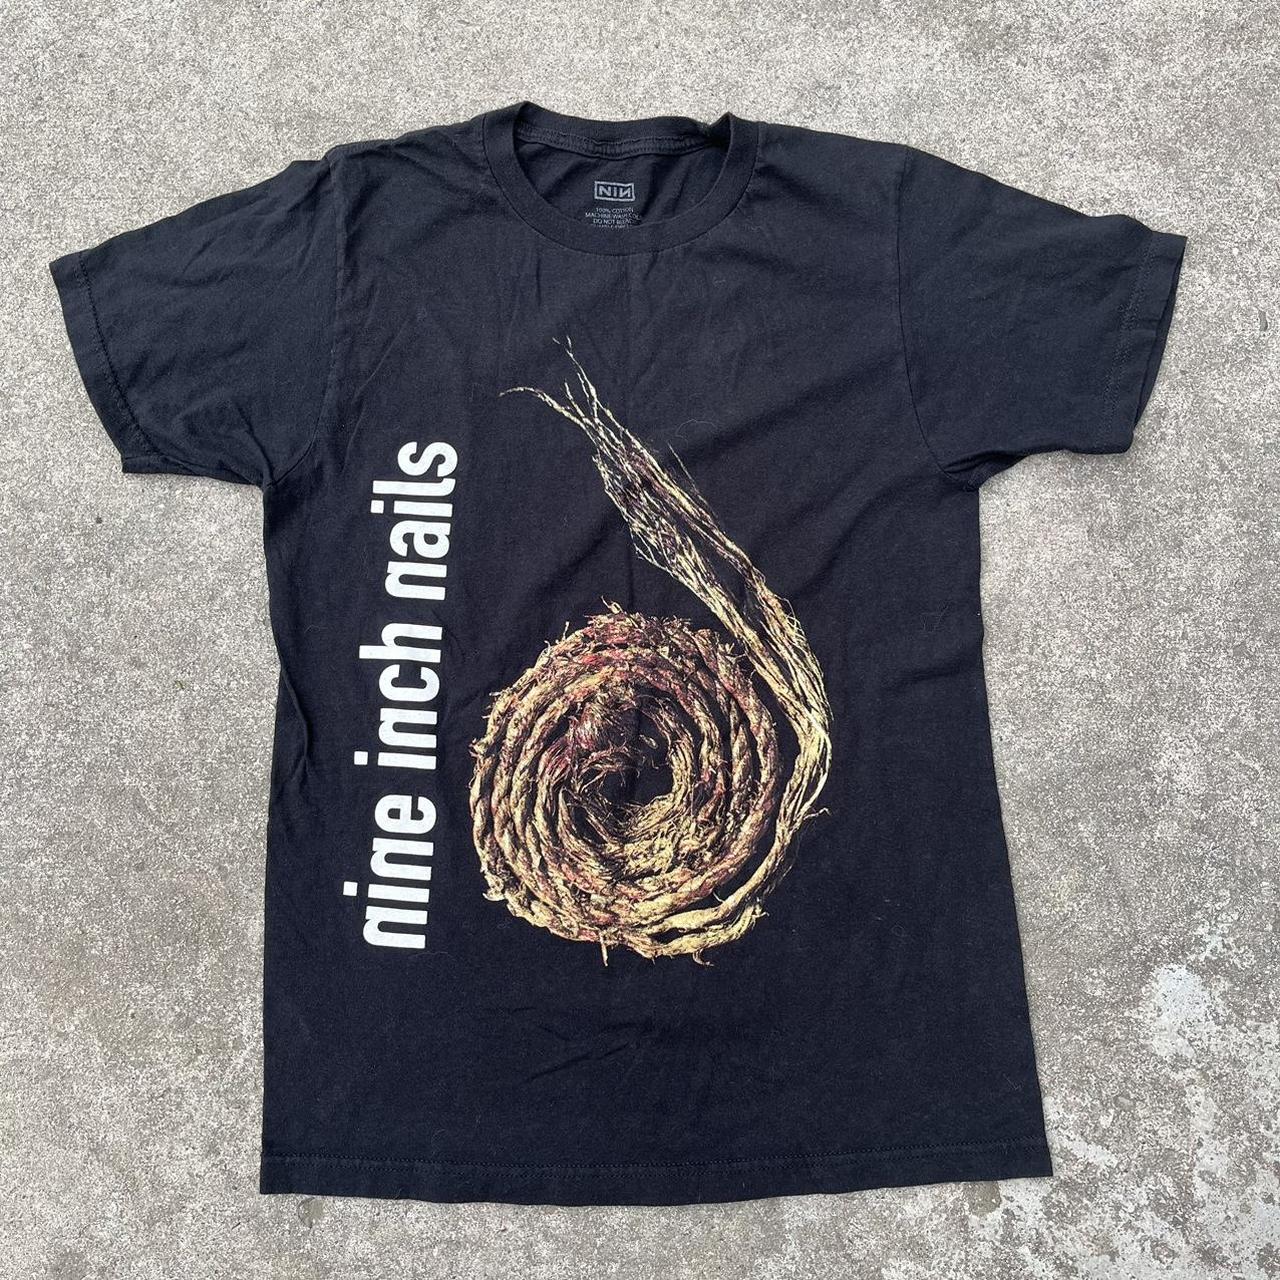 Nine Inch Nails T Shirt - Cool Design / Front N... - Depop